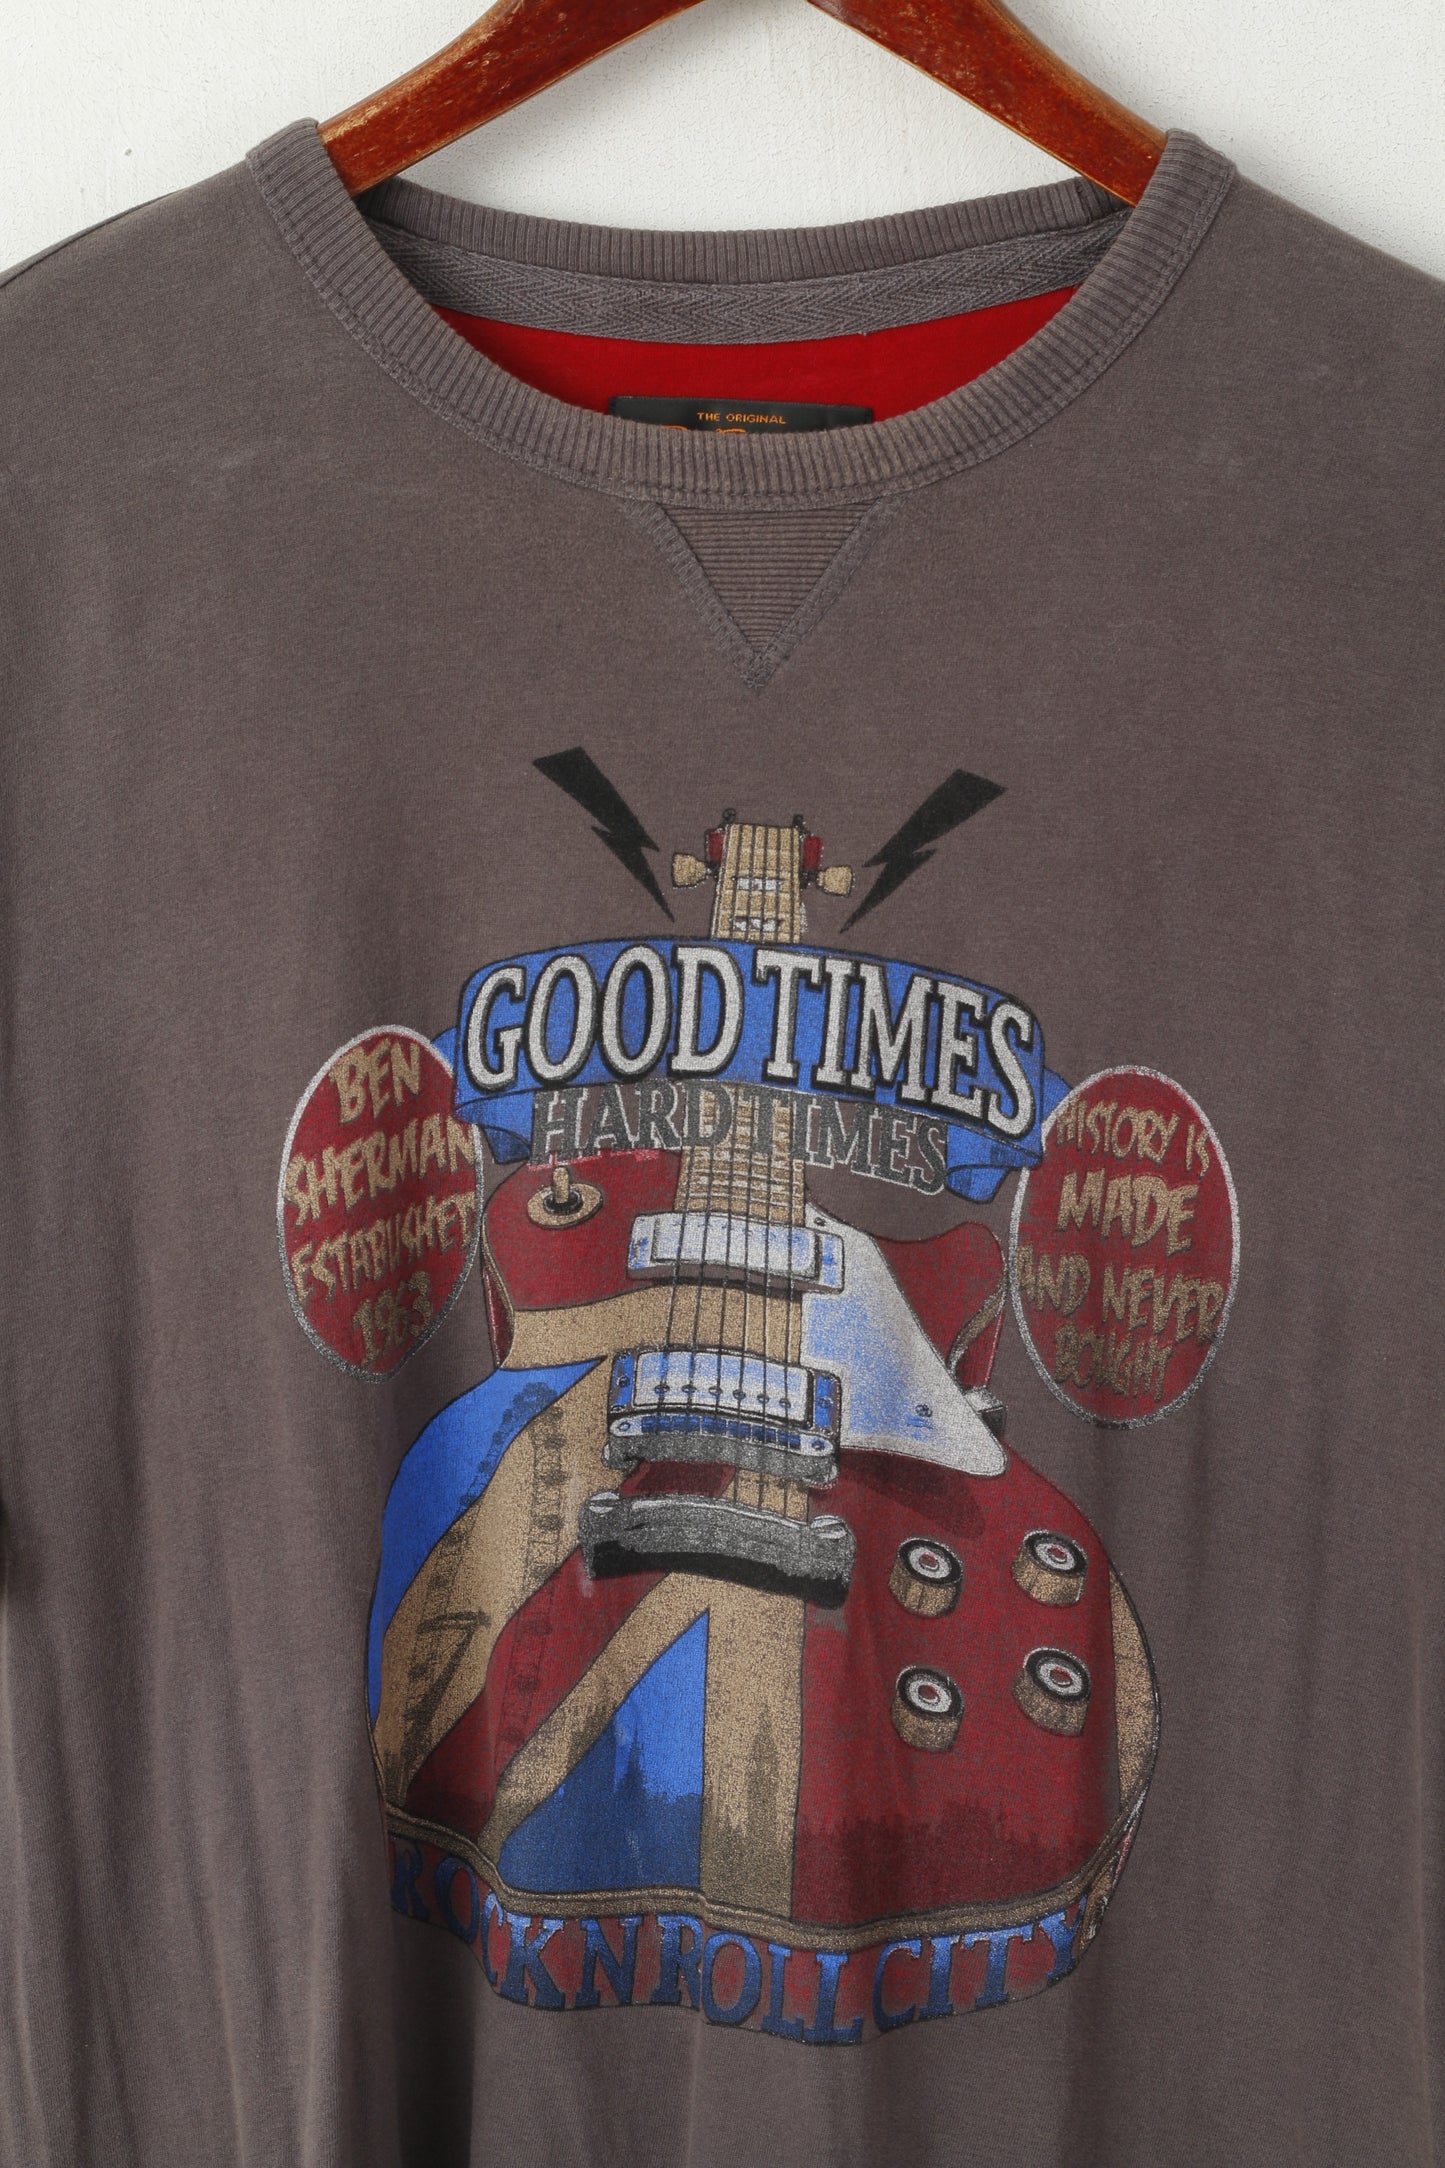 Ben Sherman Homme XL T-Shirt Gris Coton Graphique Rock'n Roll City Top